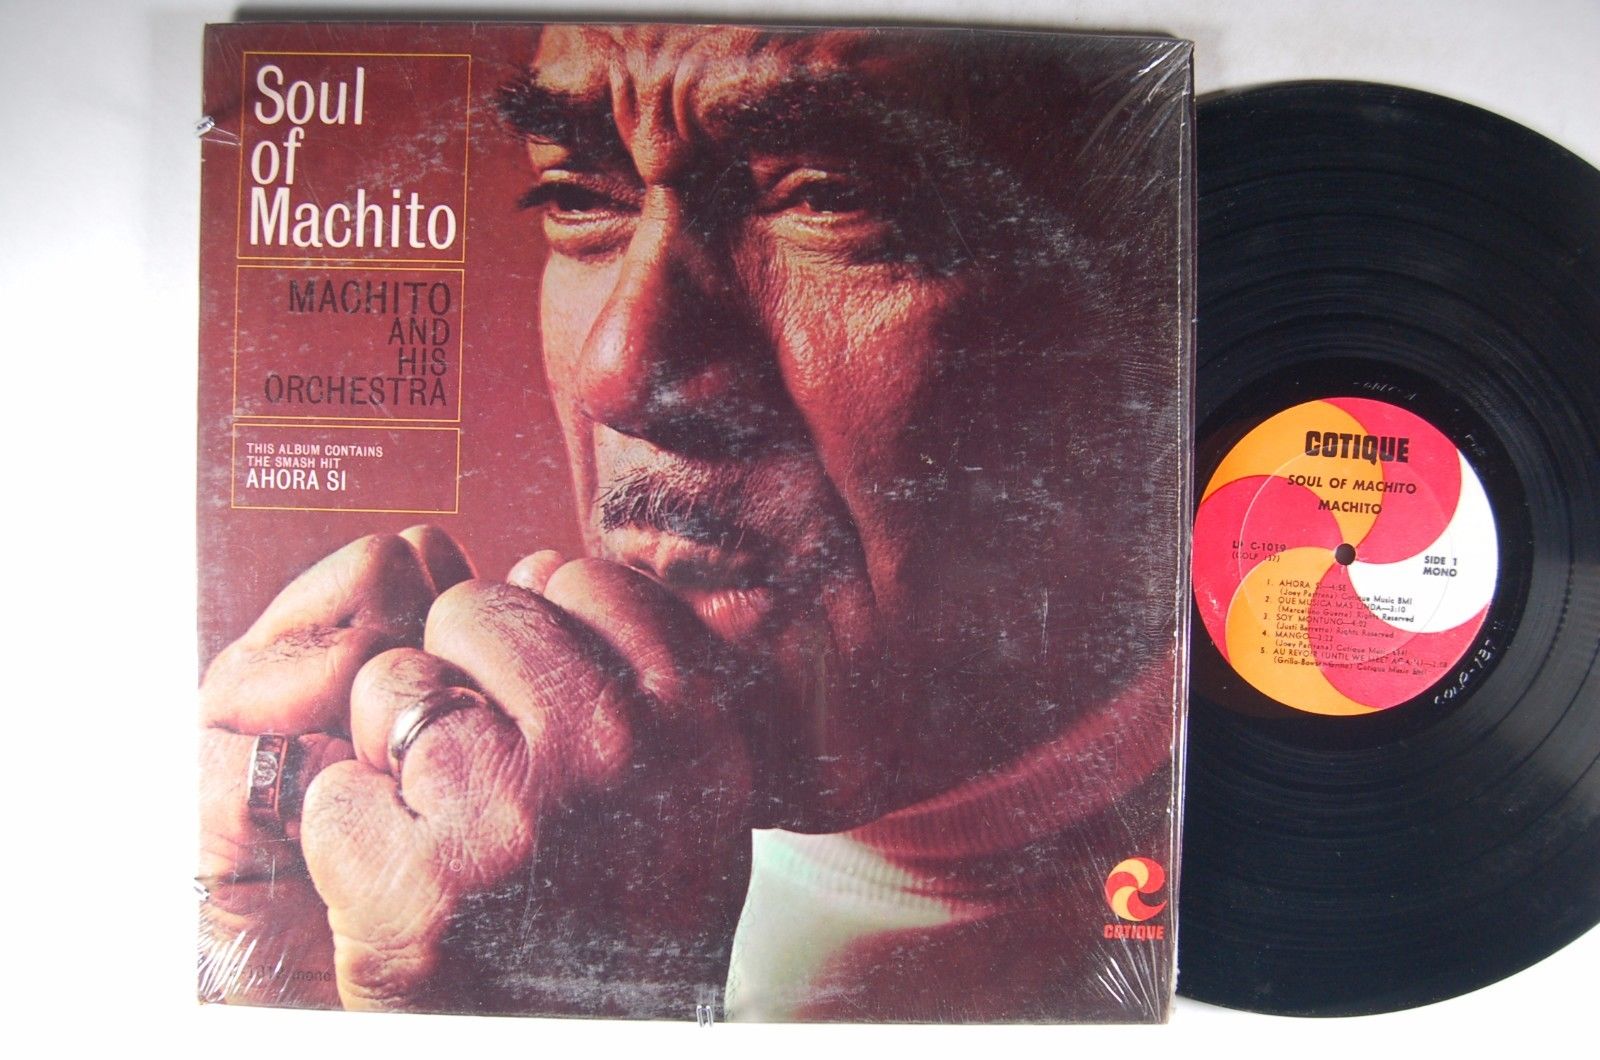 MACHITO and His ORCHESTRA Soul of Machito LATIN Original MONO LP Shrink COTIQUE